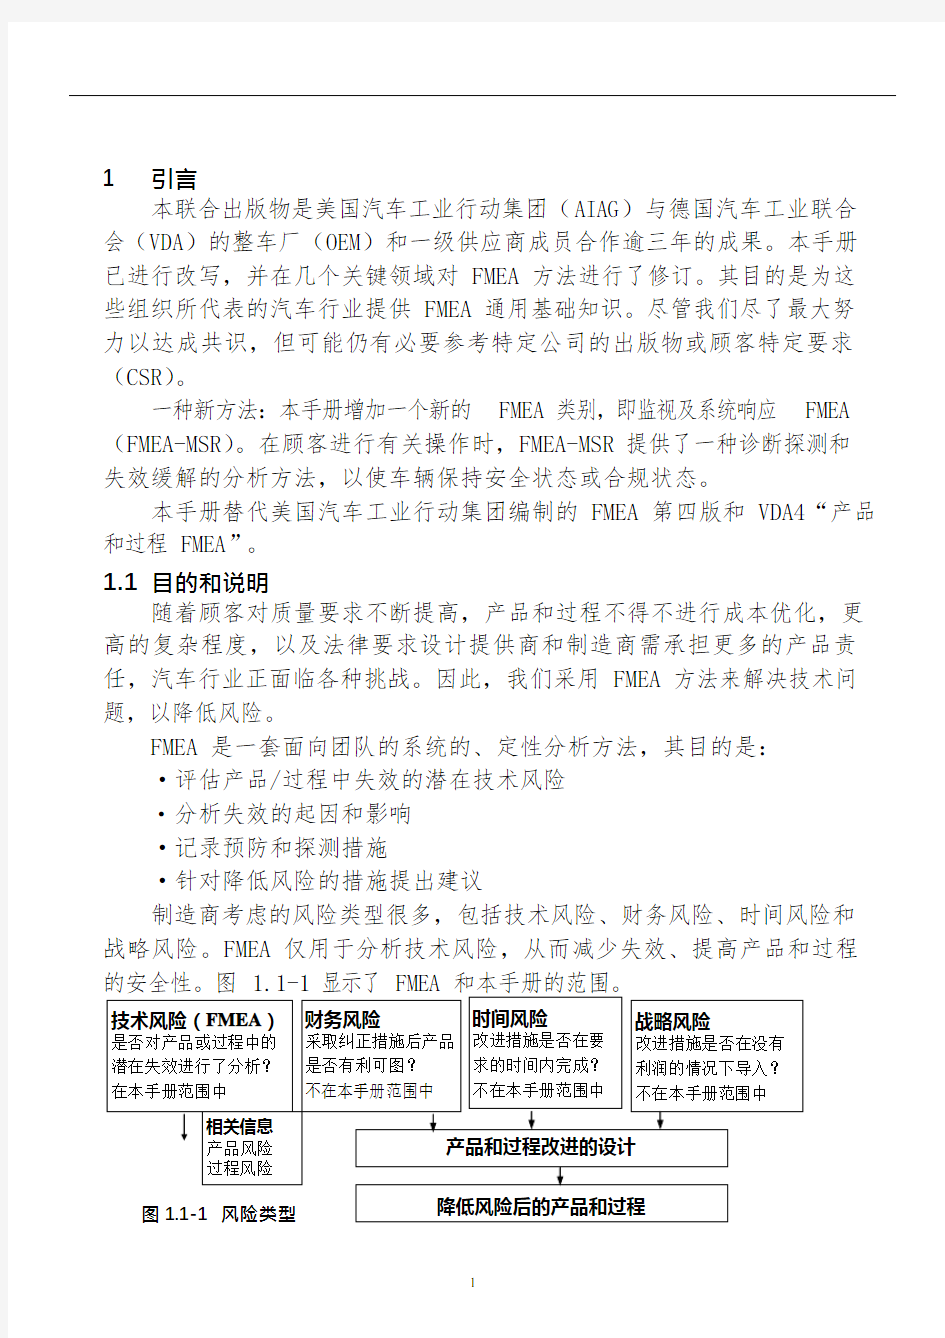 2019年新版FMEA手册(中文版)